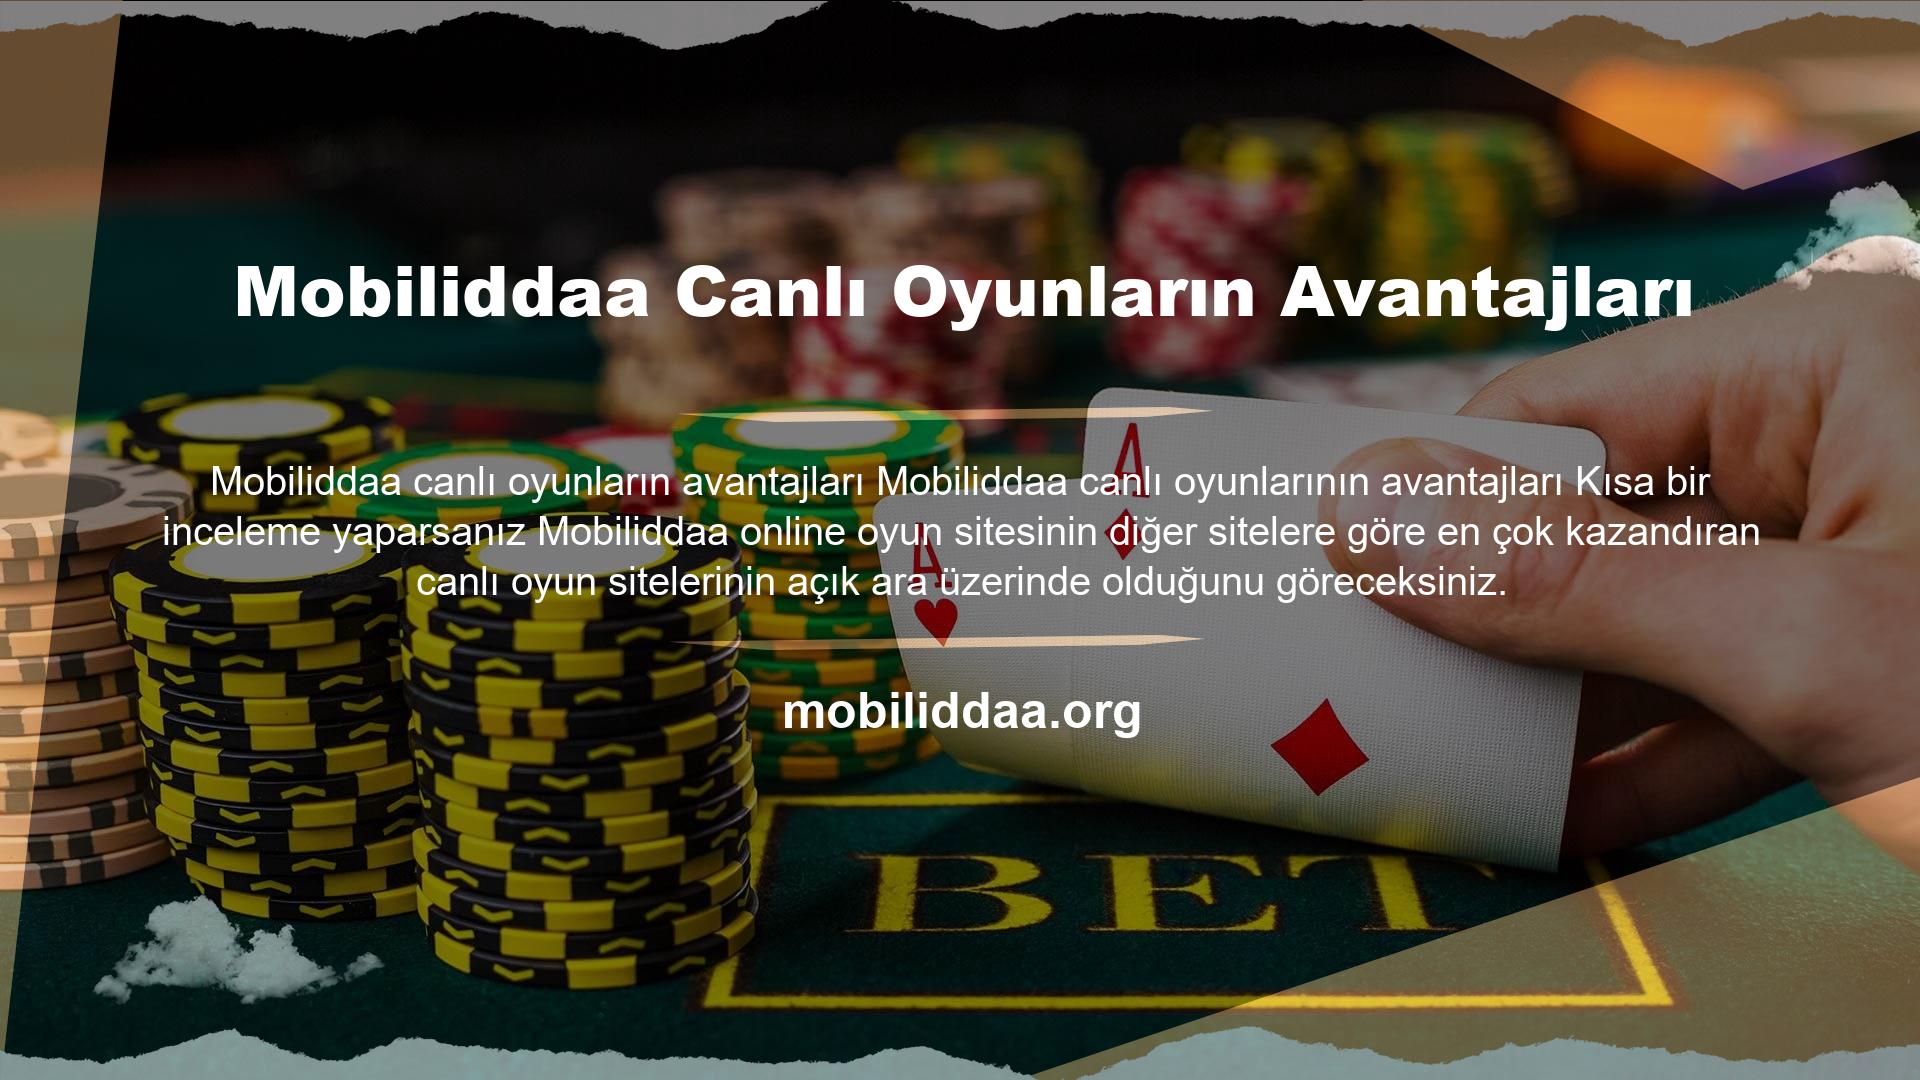 Mobiliddaa online bahis sitesi canlı oyun alanında ve hizmet verdiği diğer alanlarda sizlere daha iyi bahisler sunmaktadır